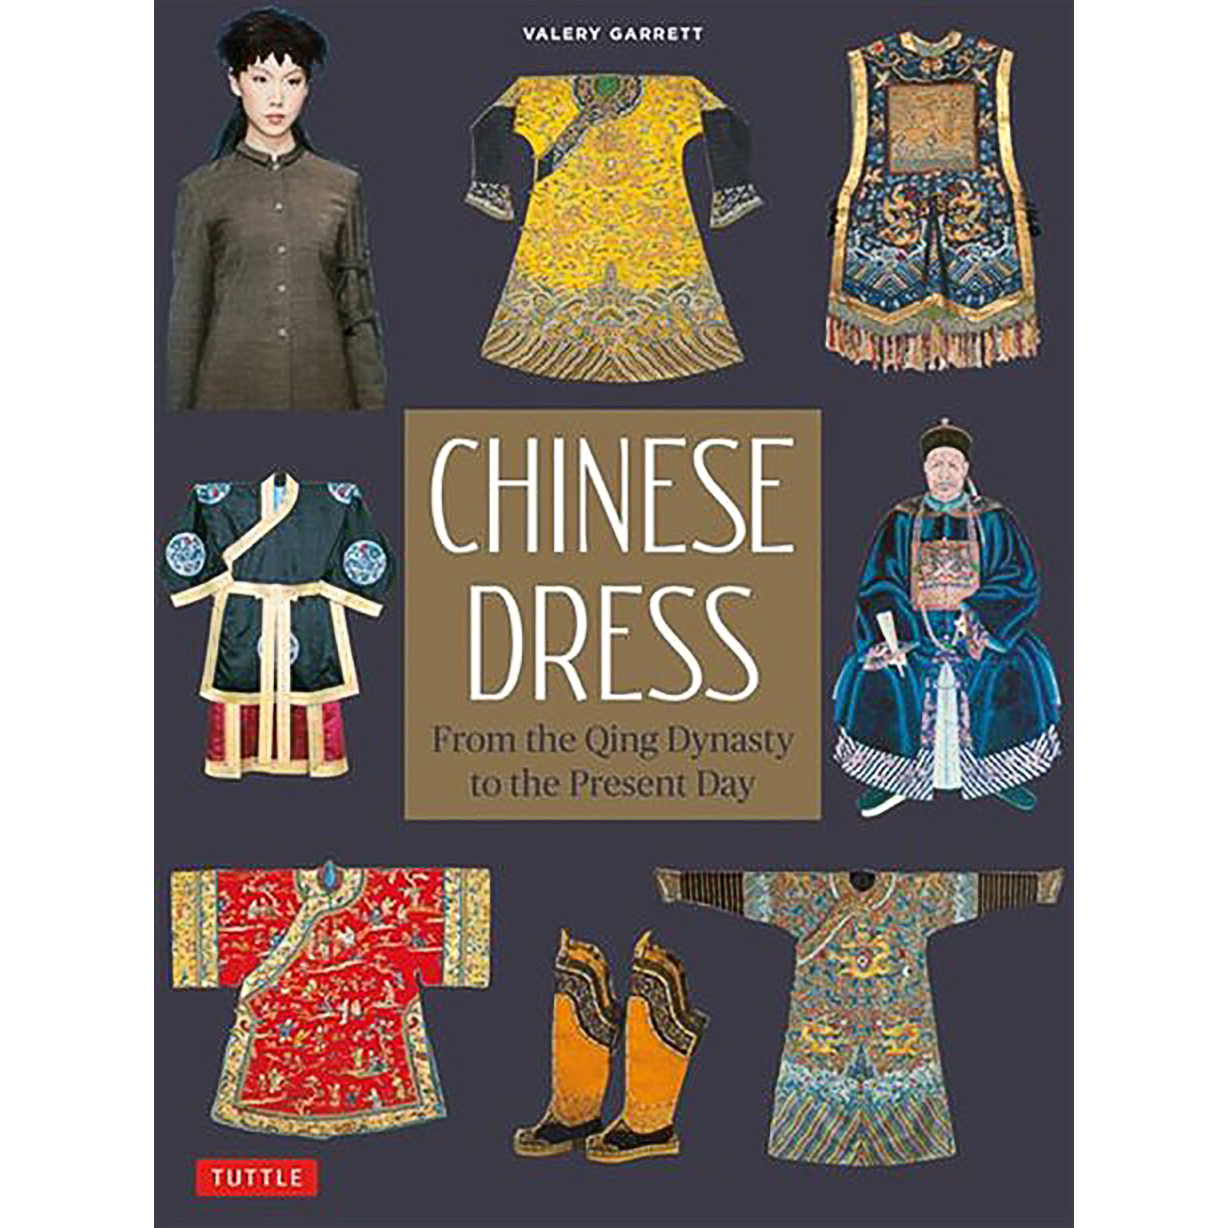 Qin Dynasty Clothing